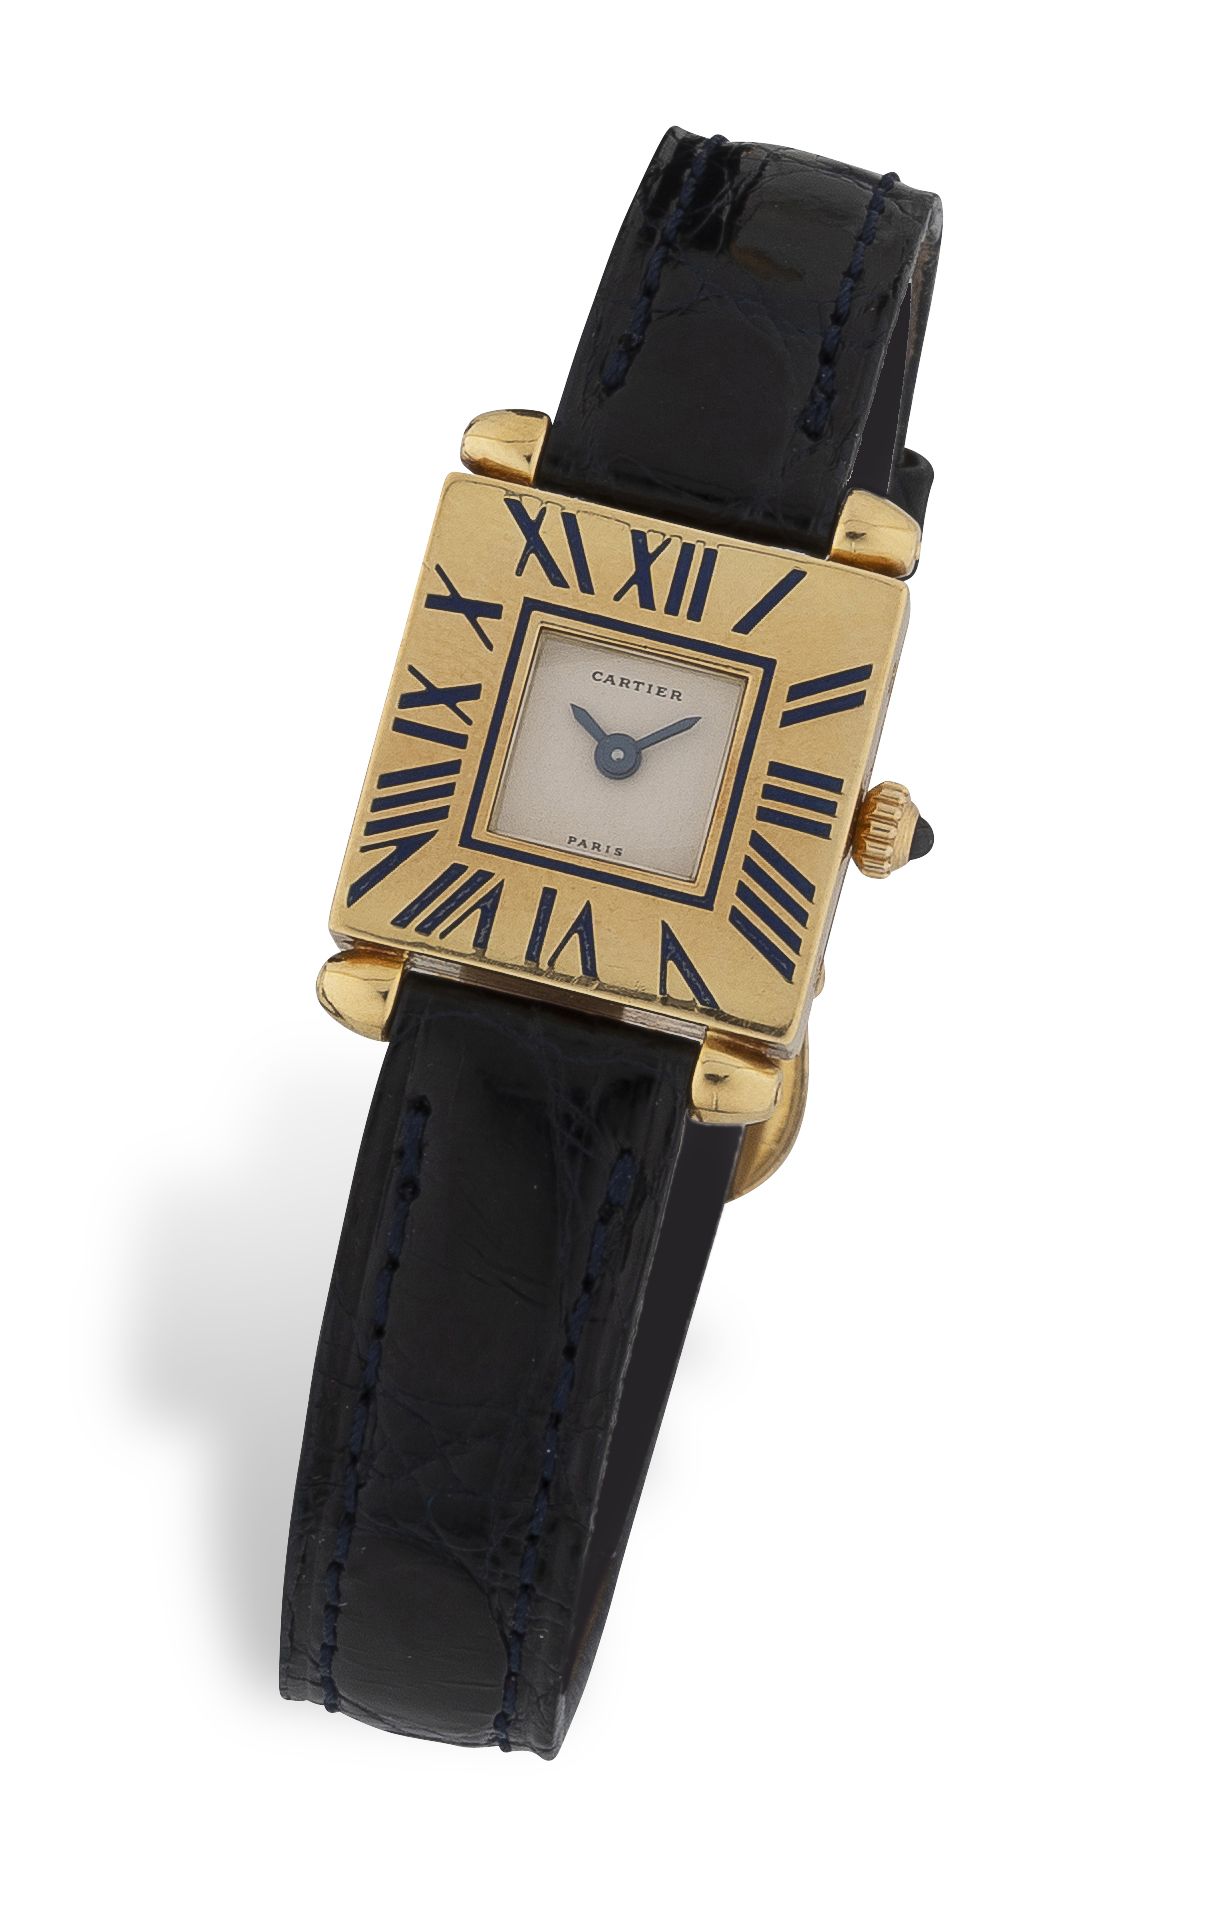 CARTIER "QUADRANT" Reloj de pulsera de señora en oro amarillo (750).

Esfera bla&hellip;